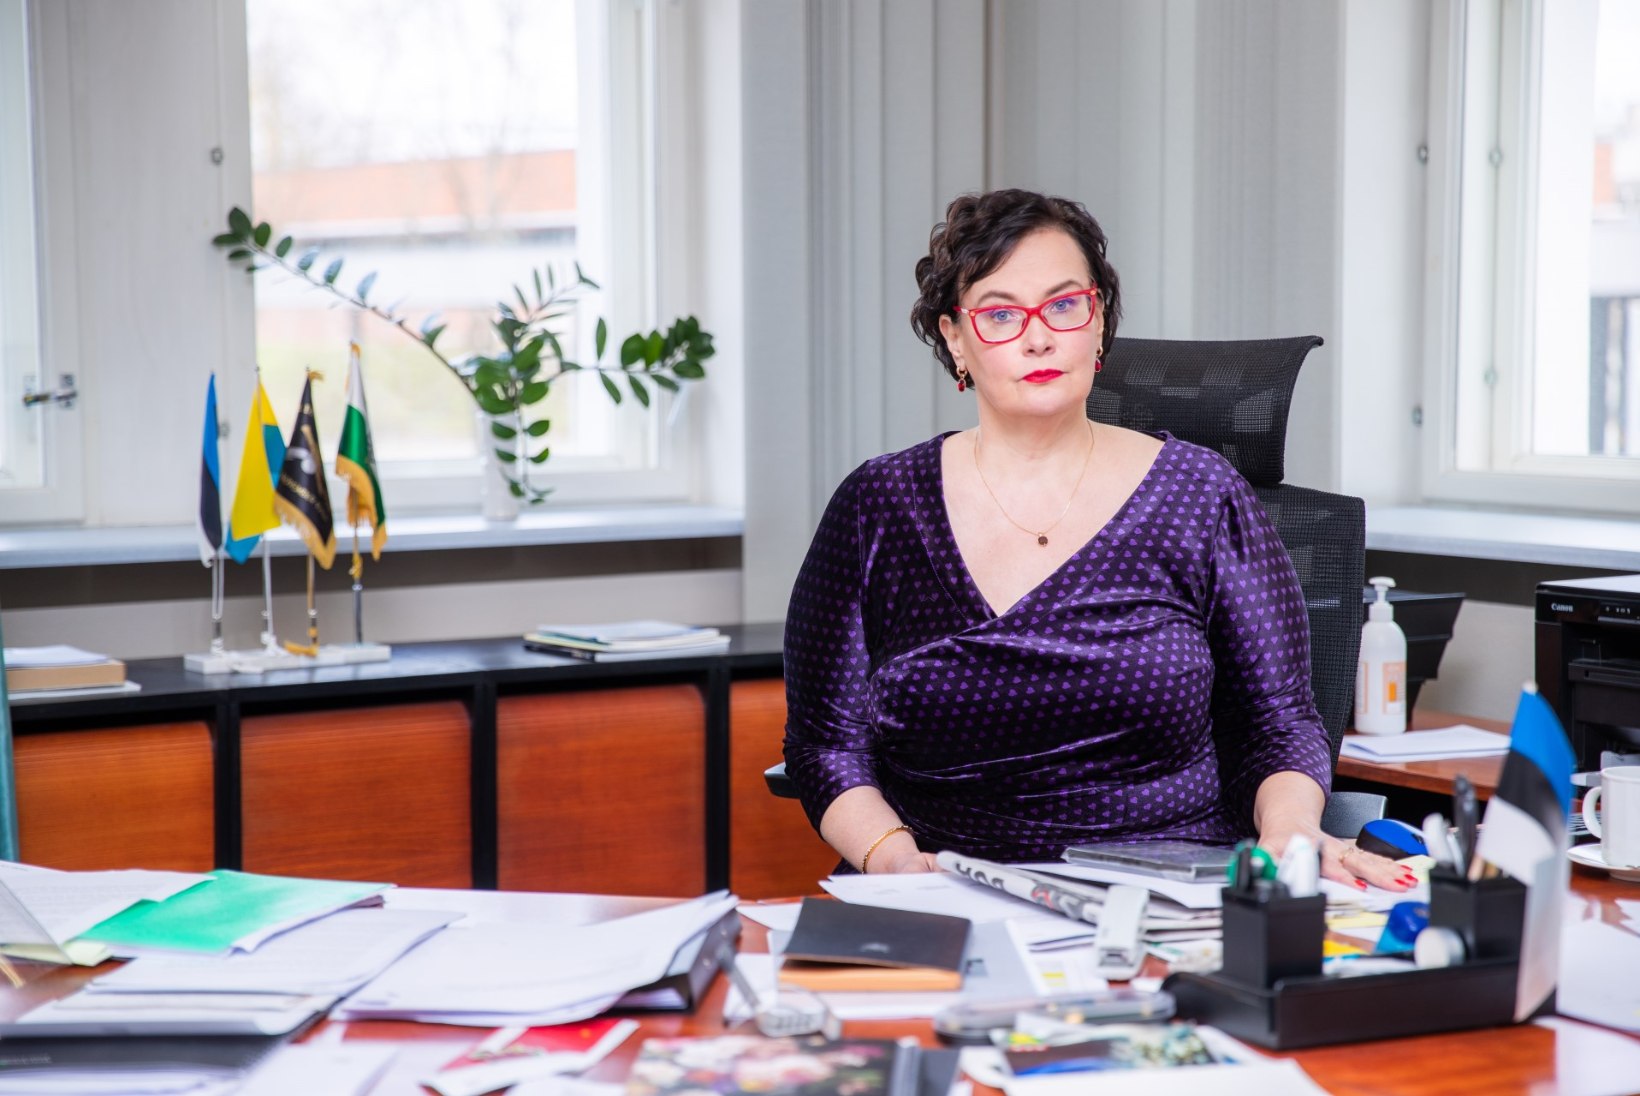 Narva esimene naislinnapea Katri Raik: olen nii iseseisev, et ei kujuta end ette kellelegi igal õhtul süüa tegemas